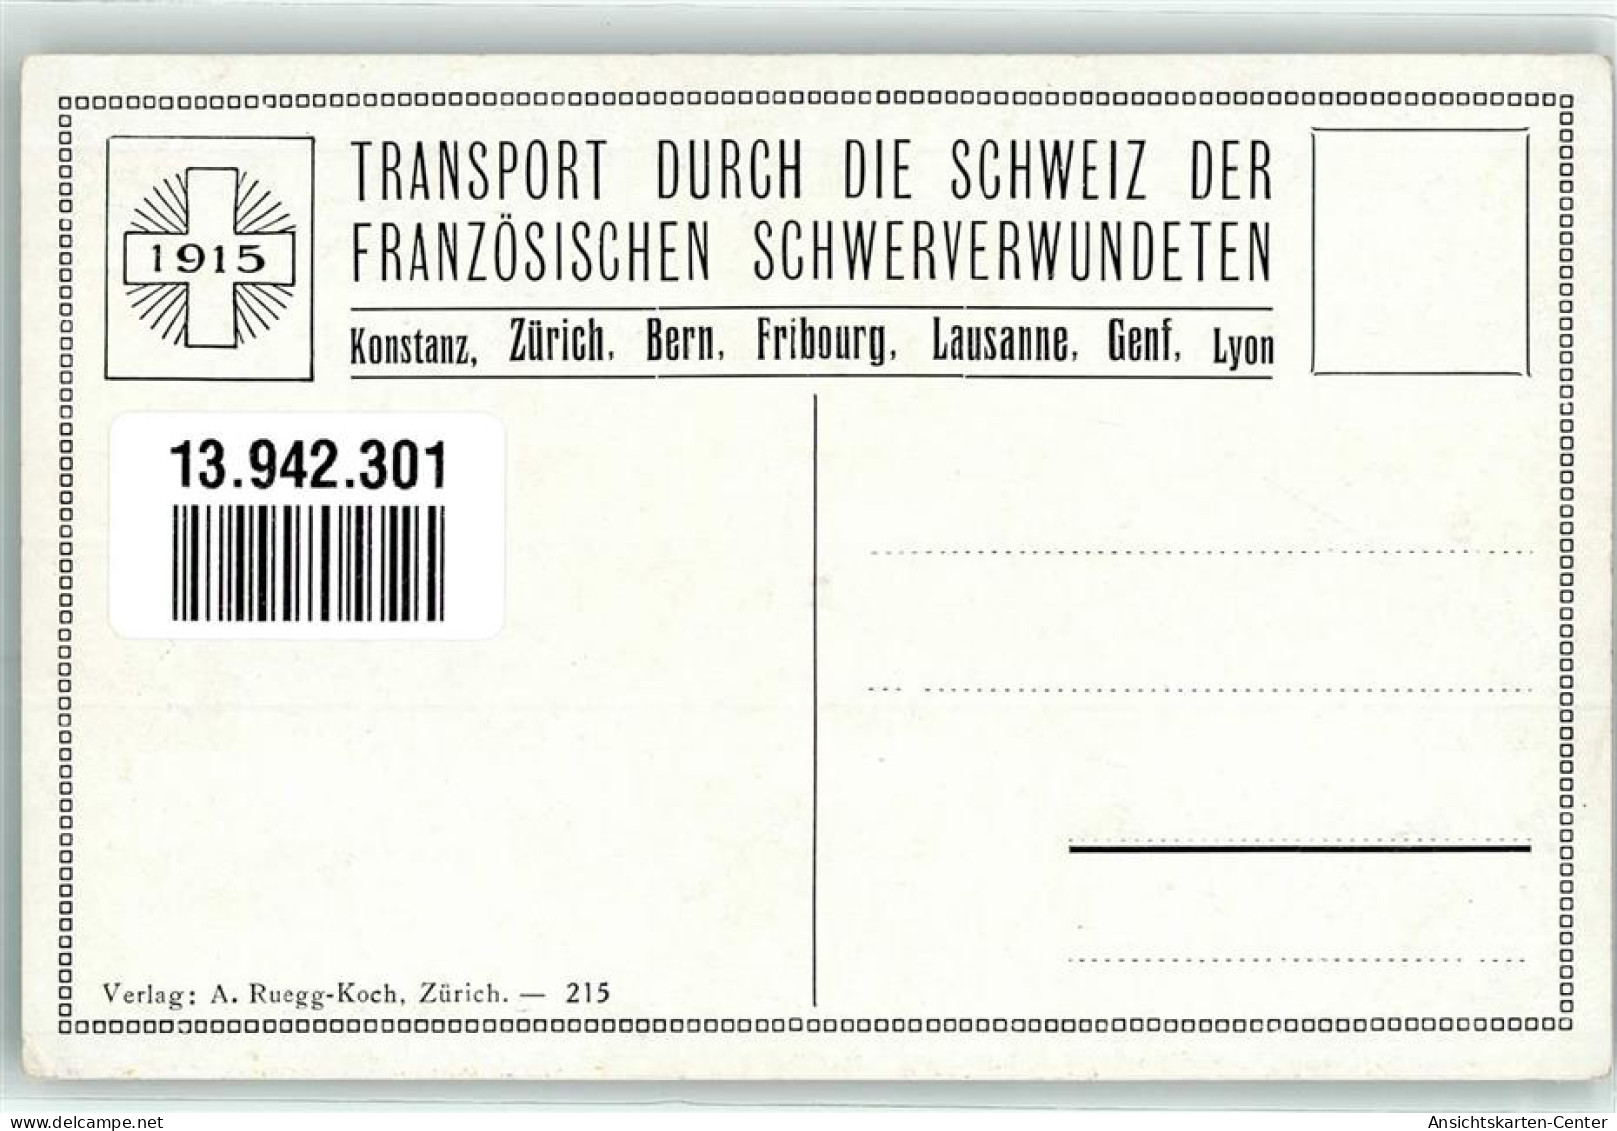 13942301 - Bahnhof Eisenbahn Verwundete Krankenschwester Transport Durch Die Schweiz Der Franzoesischen Schwerverwundet - Red Cross